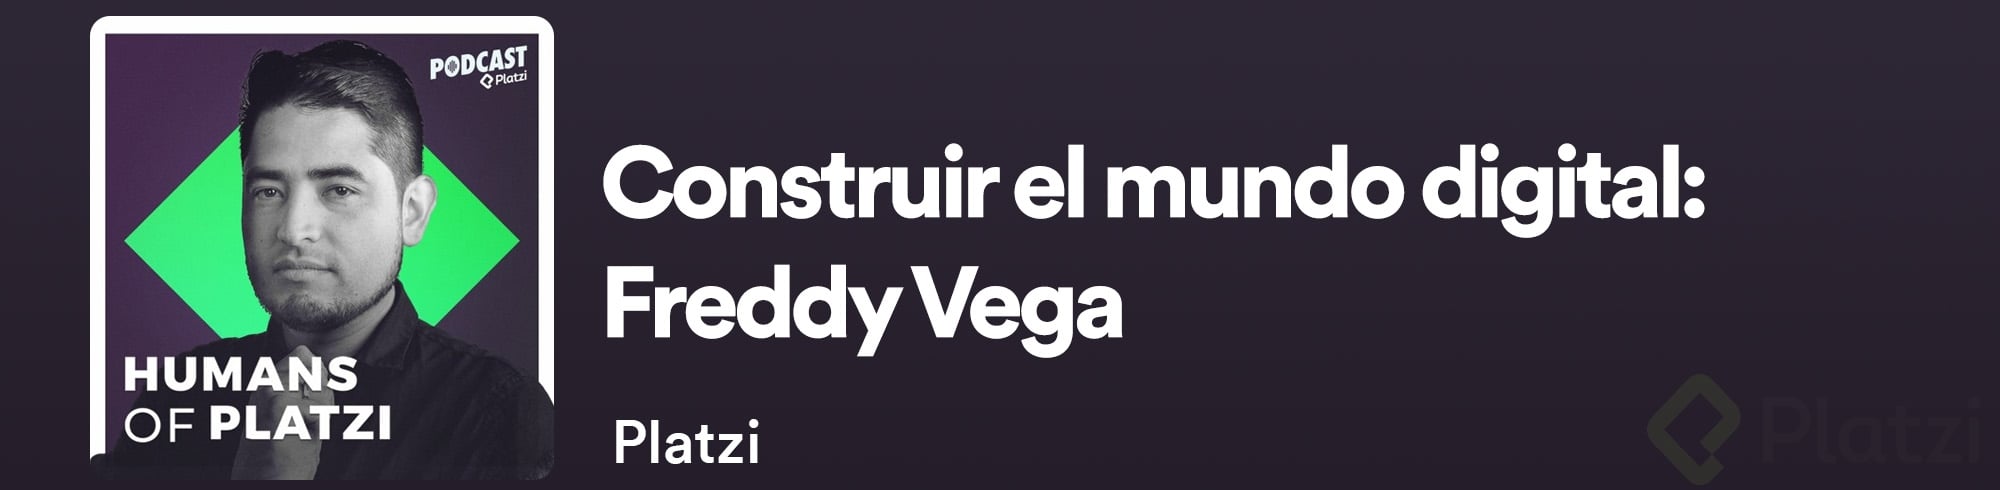 Freddy Vega